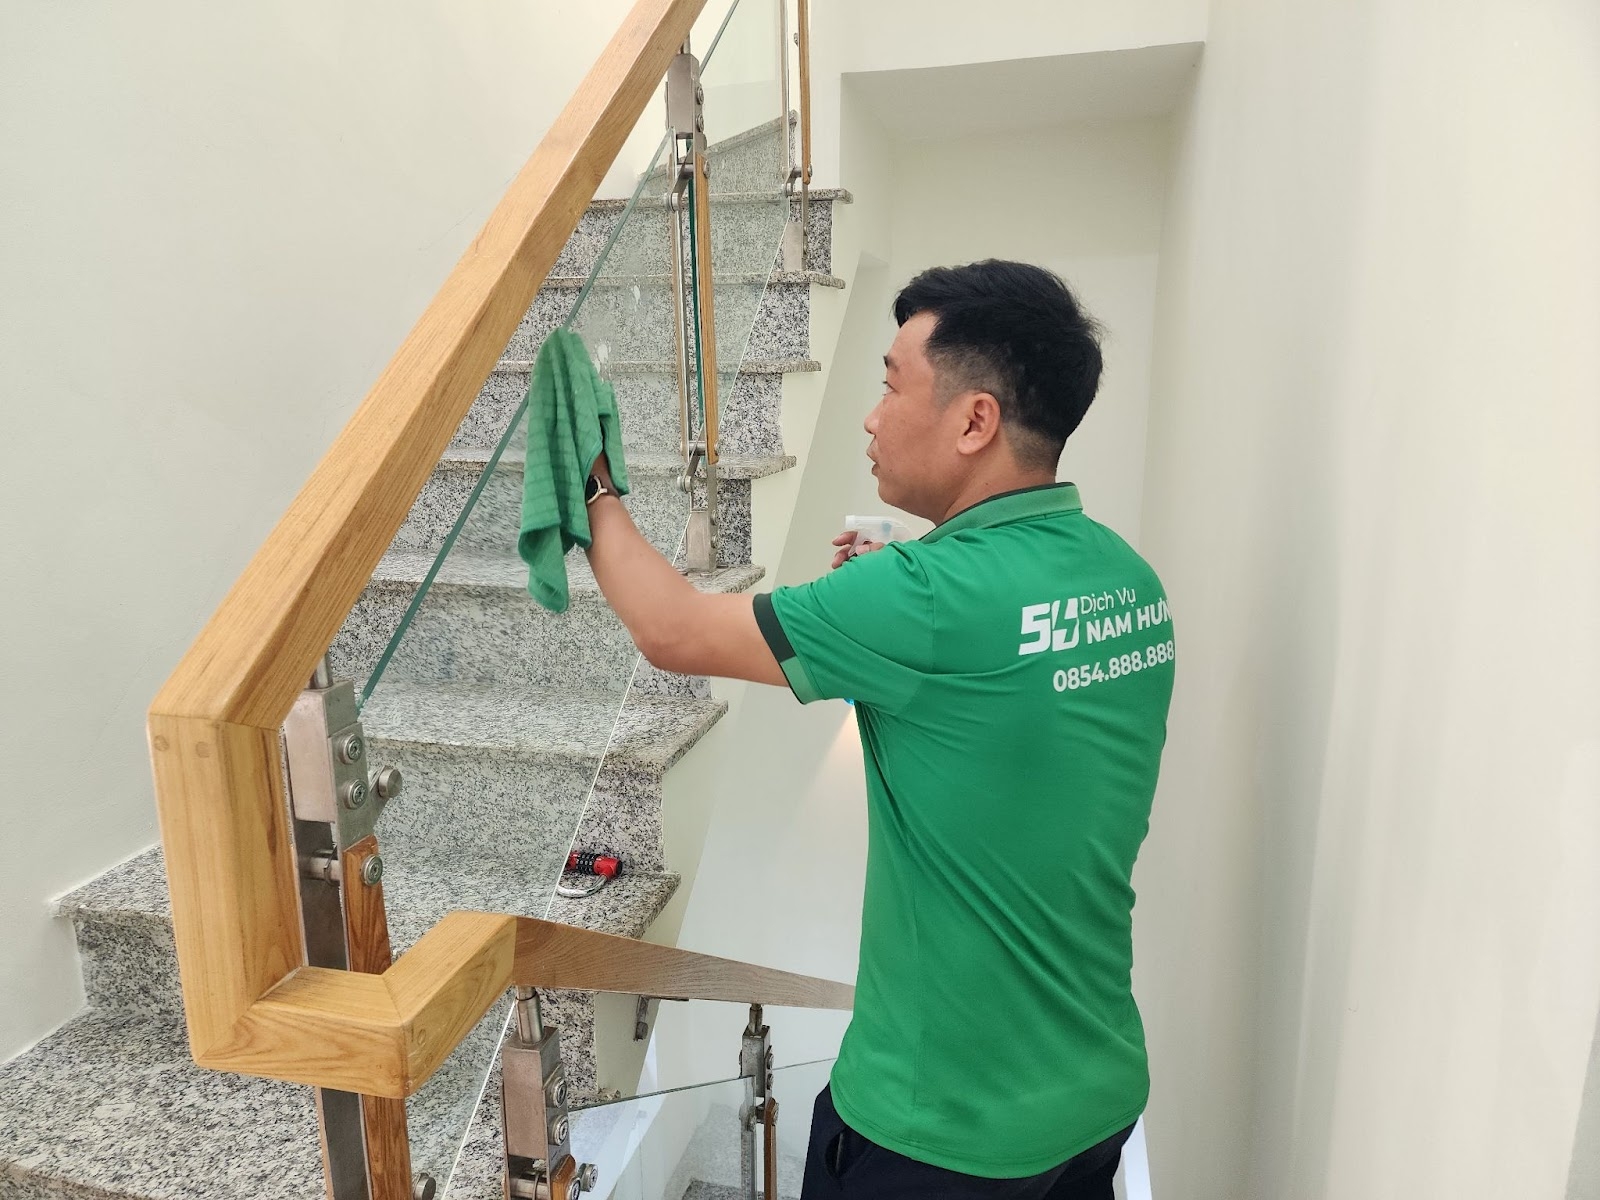 Dịch vụ Nam Hưng : Đơn vị cung cấp dịch vụ vệ sinh công nghiệp uy tín tại Thành phố Hồ Chí Minh